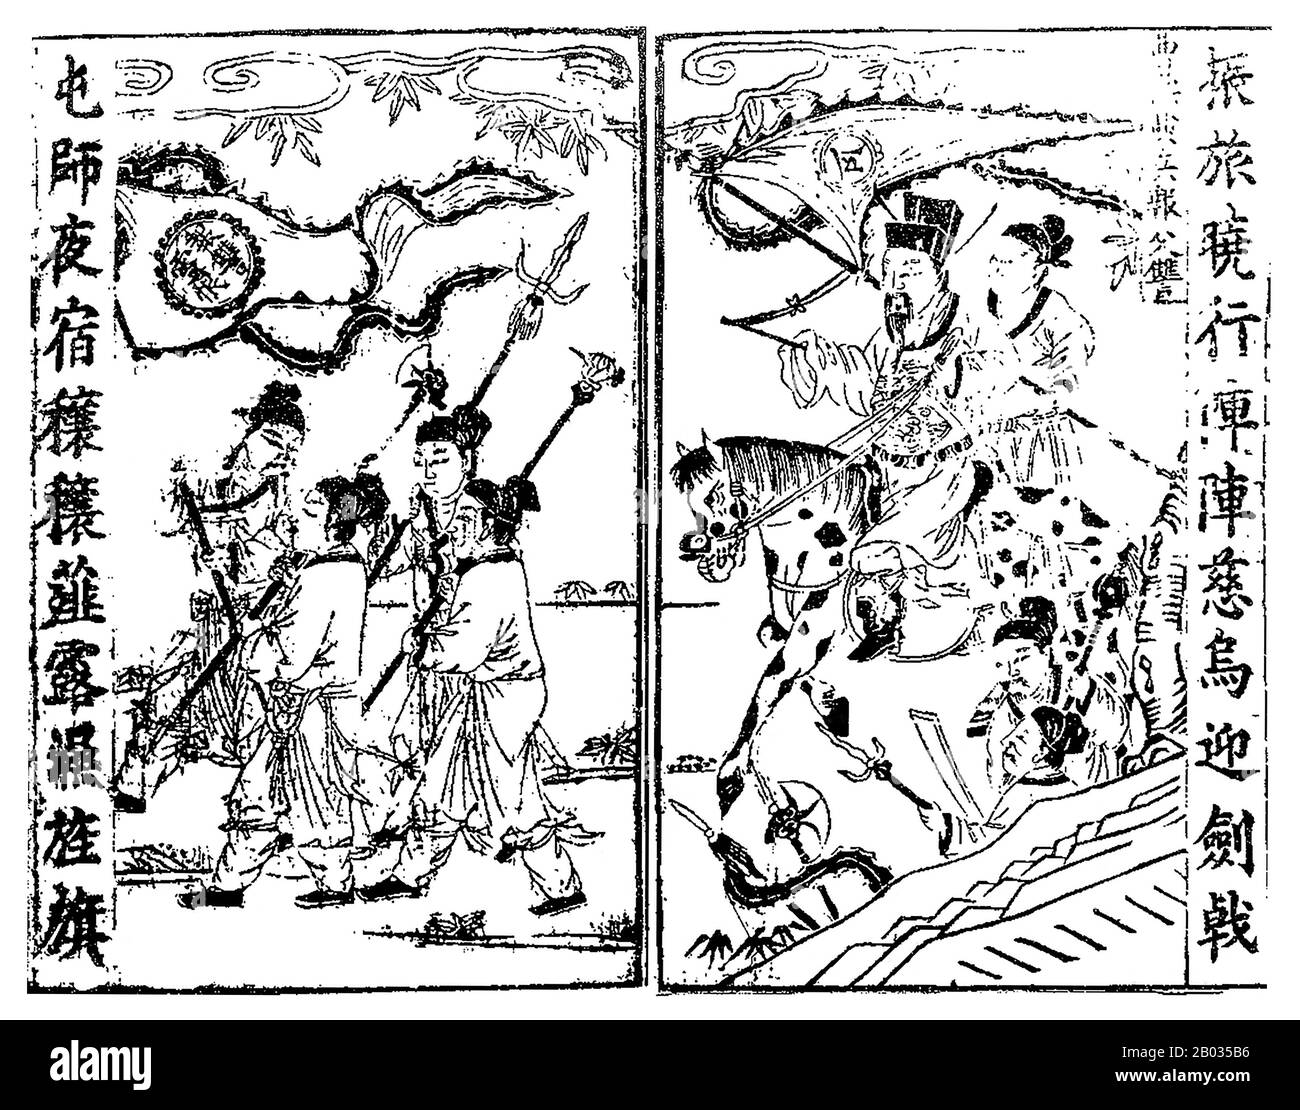 Cao Cao (155-15. März 220 CE), Höflichkeitsname Mengde, war einer der wichtigsten Warlords während der Zeit der Baumkönigreiche. Cao, der vorletzte Kanzler der östlichen Han-Dynastie, stieg in den letzten Jahren der Dynastie zur Großmacht auf. Als die östliche Han-Dynastie fiel, konnte Cao Cao die größten und wohlhabendsten Städte der zentralen Ebenen Nordchinas sichern und sich unter seiner Herrschaft vereinen. Während der Zeit Der Drei Reiche legte er den Grundstein für das, was zum Staat Cao Wei werden würde, das posthum mit dem Titel "Kaiser Wu von Wei" geehrt wurde. Obwohl er sehr erfolgreich war Stockfoto